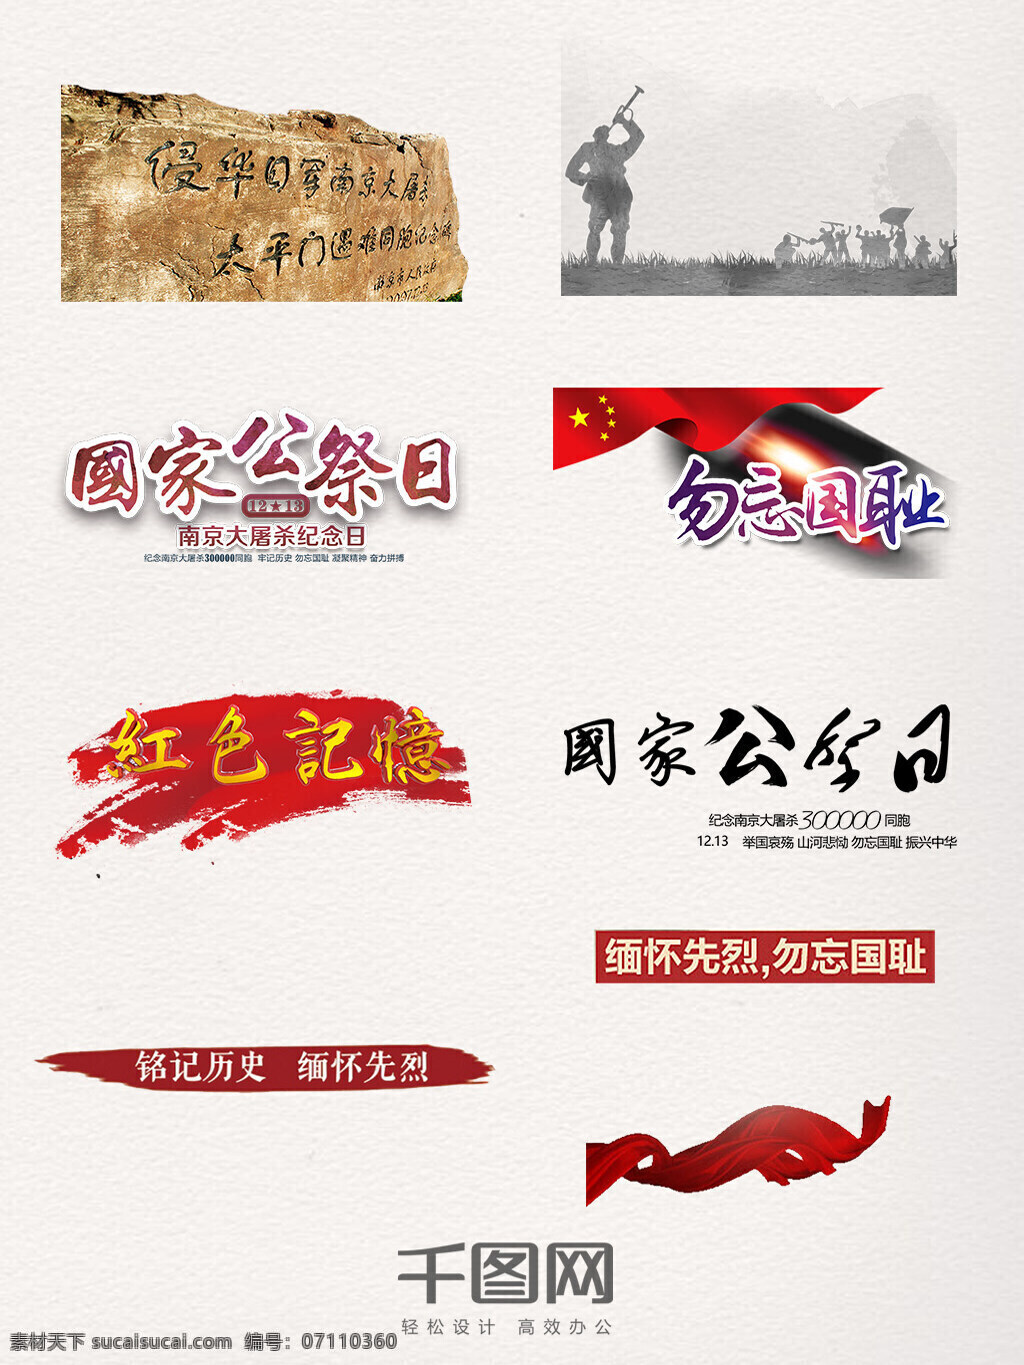 南京大屠杀 装饰 石碑雕刻 英雄战士 国家公祭日 勿忘国耻 红色记忆 艺术字元素